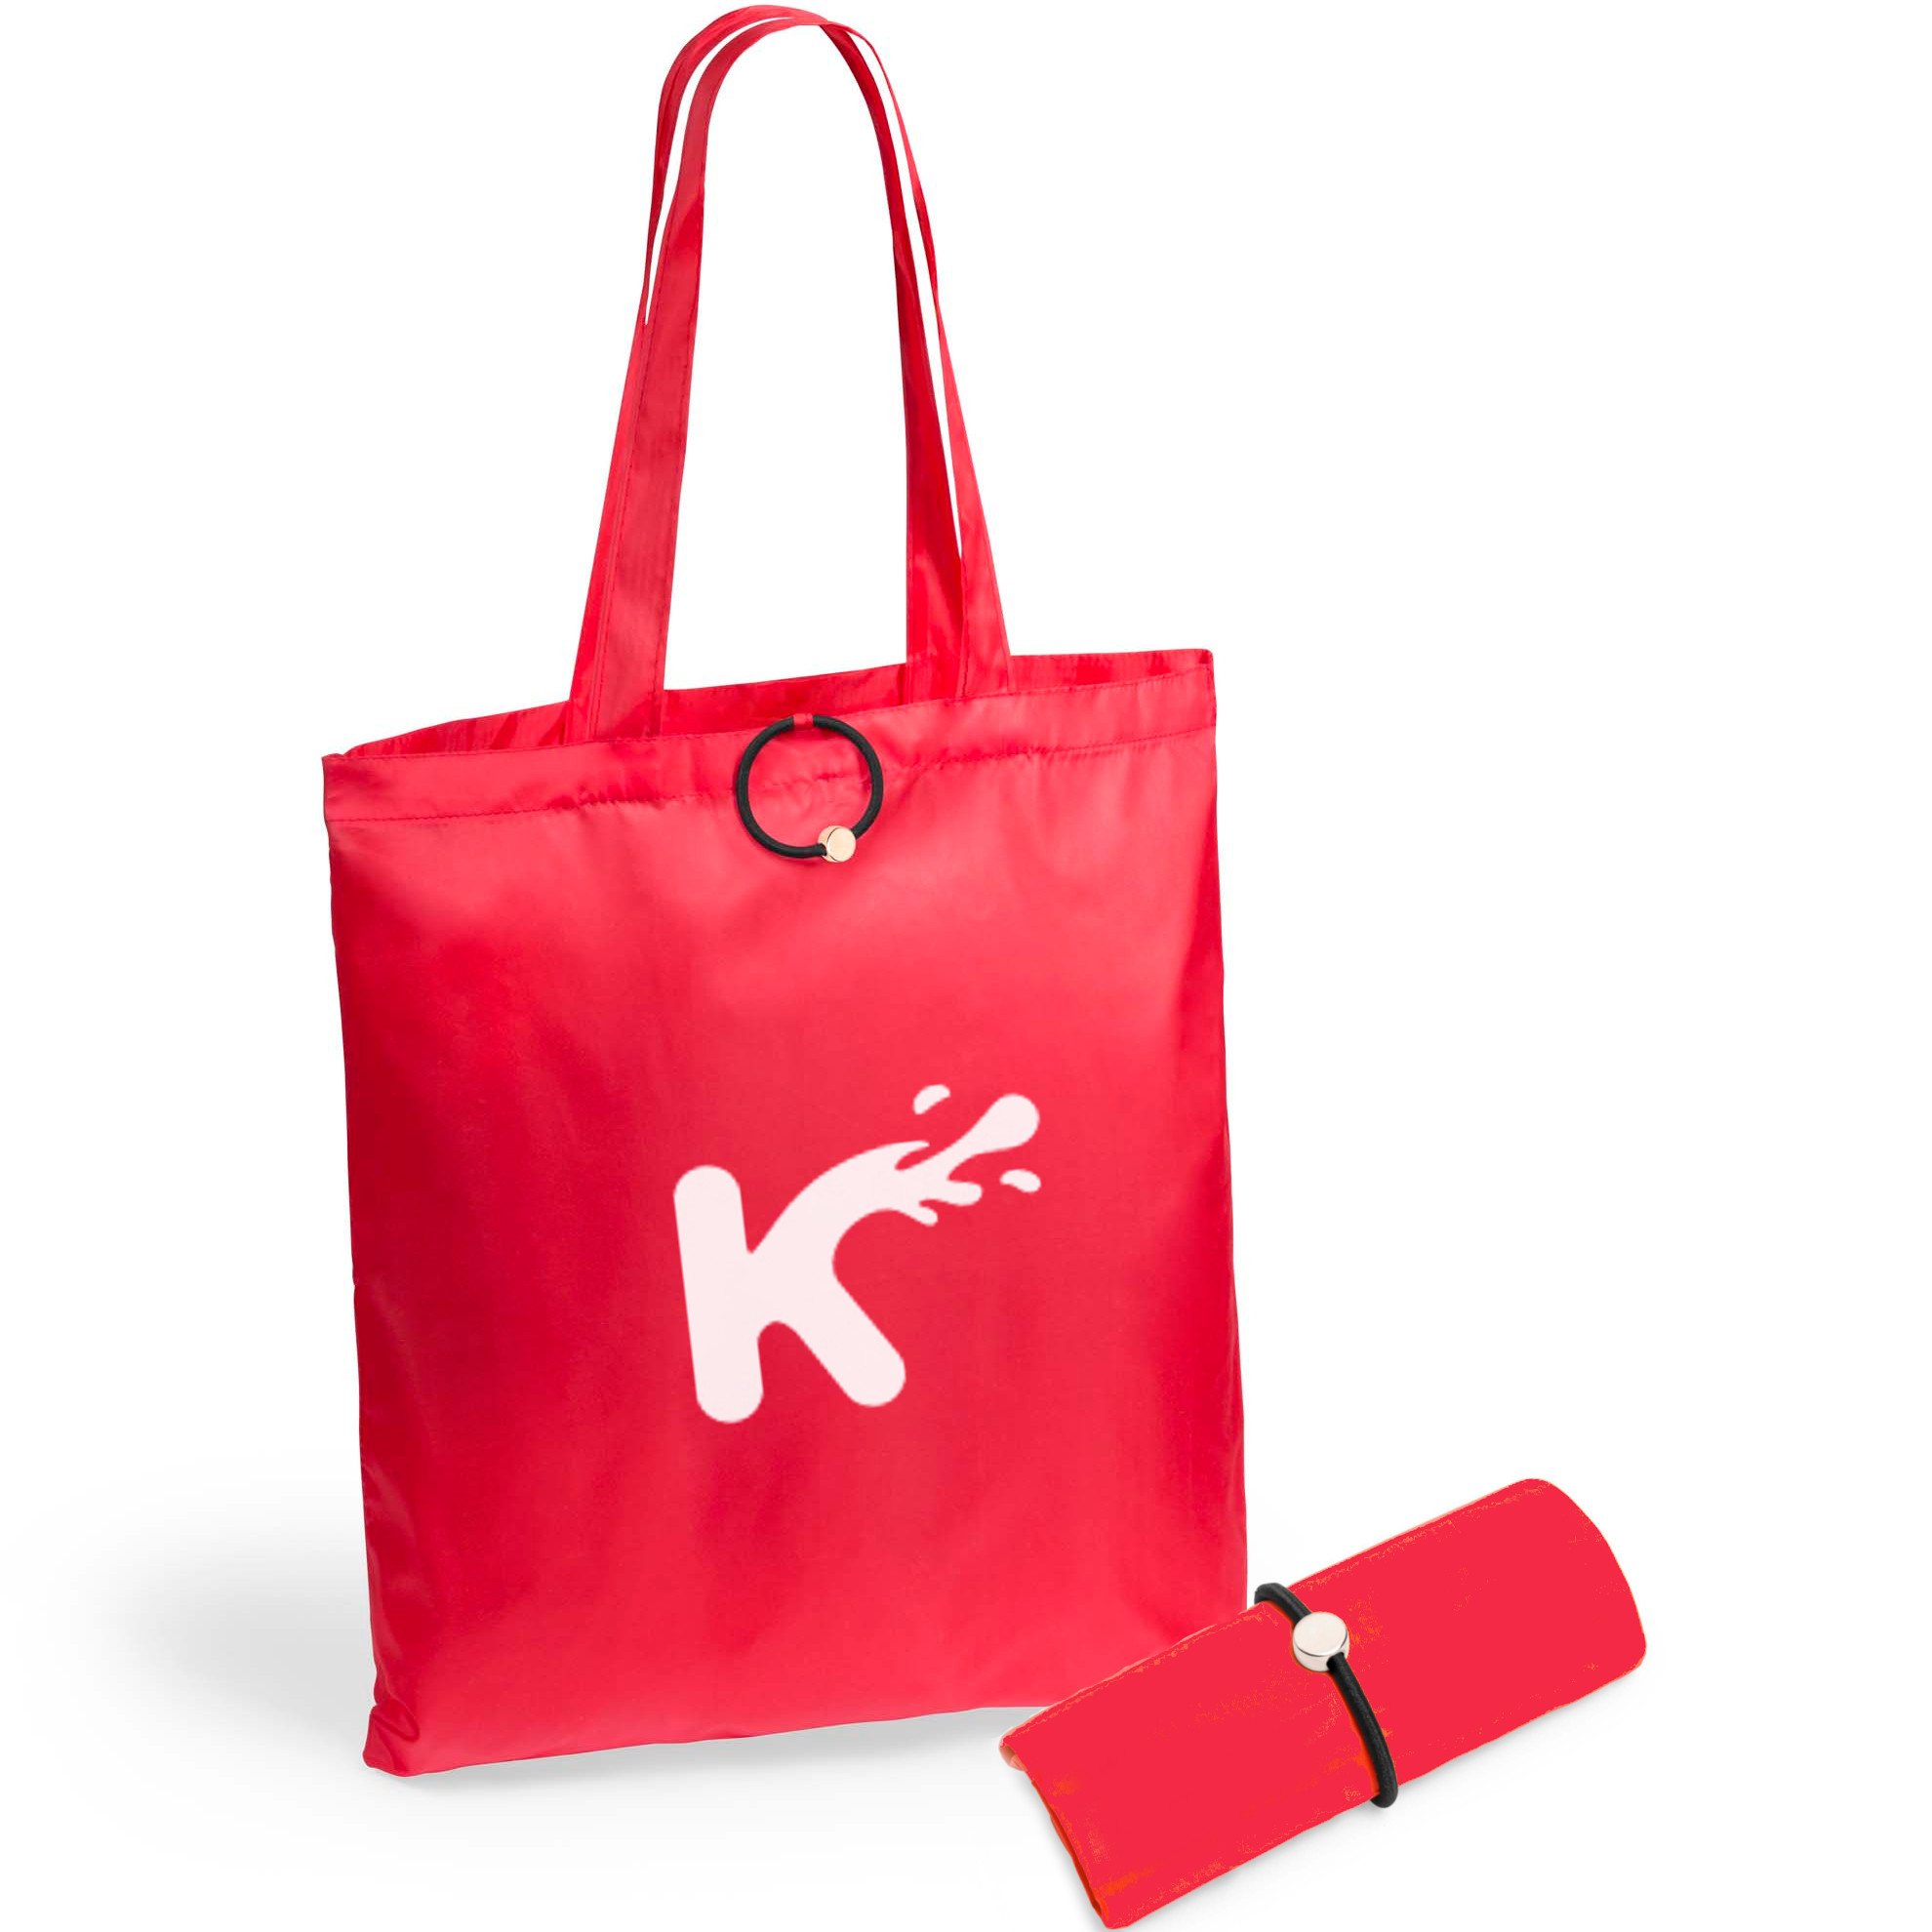 Branded Shopper Bag